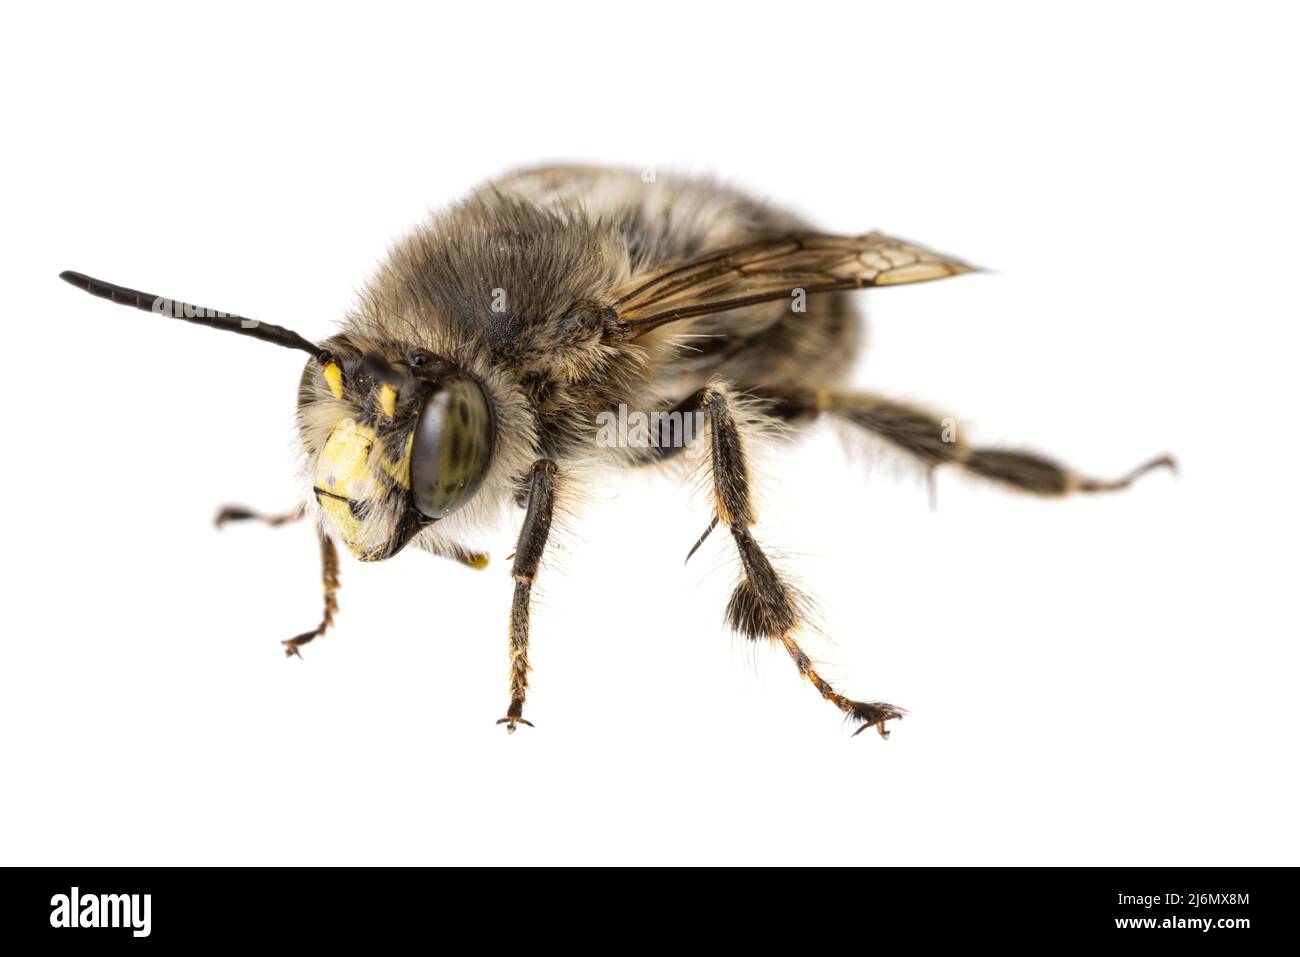 Insectes d'europe - abeilles: Macro d'Anthophora crinipes mâles (Pelzbienen) isolés sur fond blanc - vue de face Banque D'Images